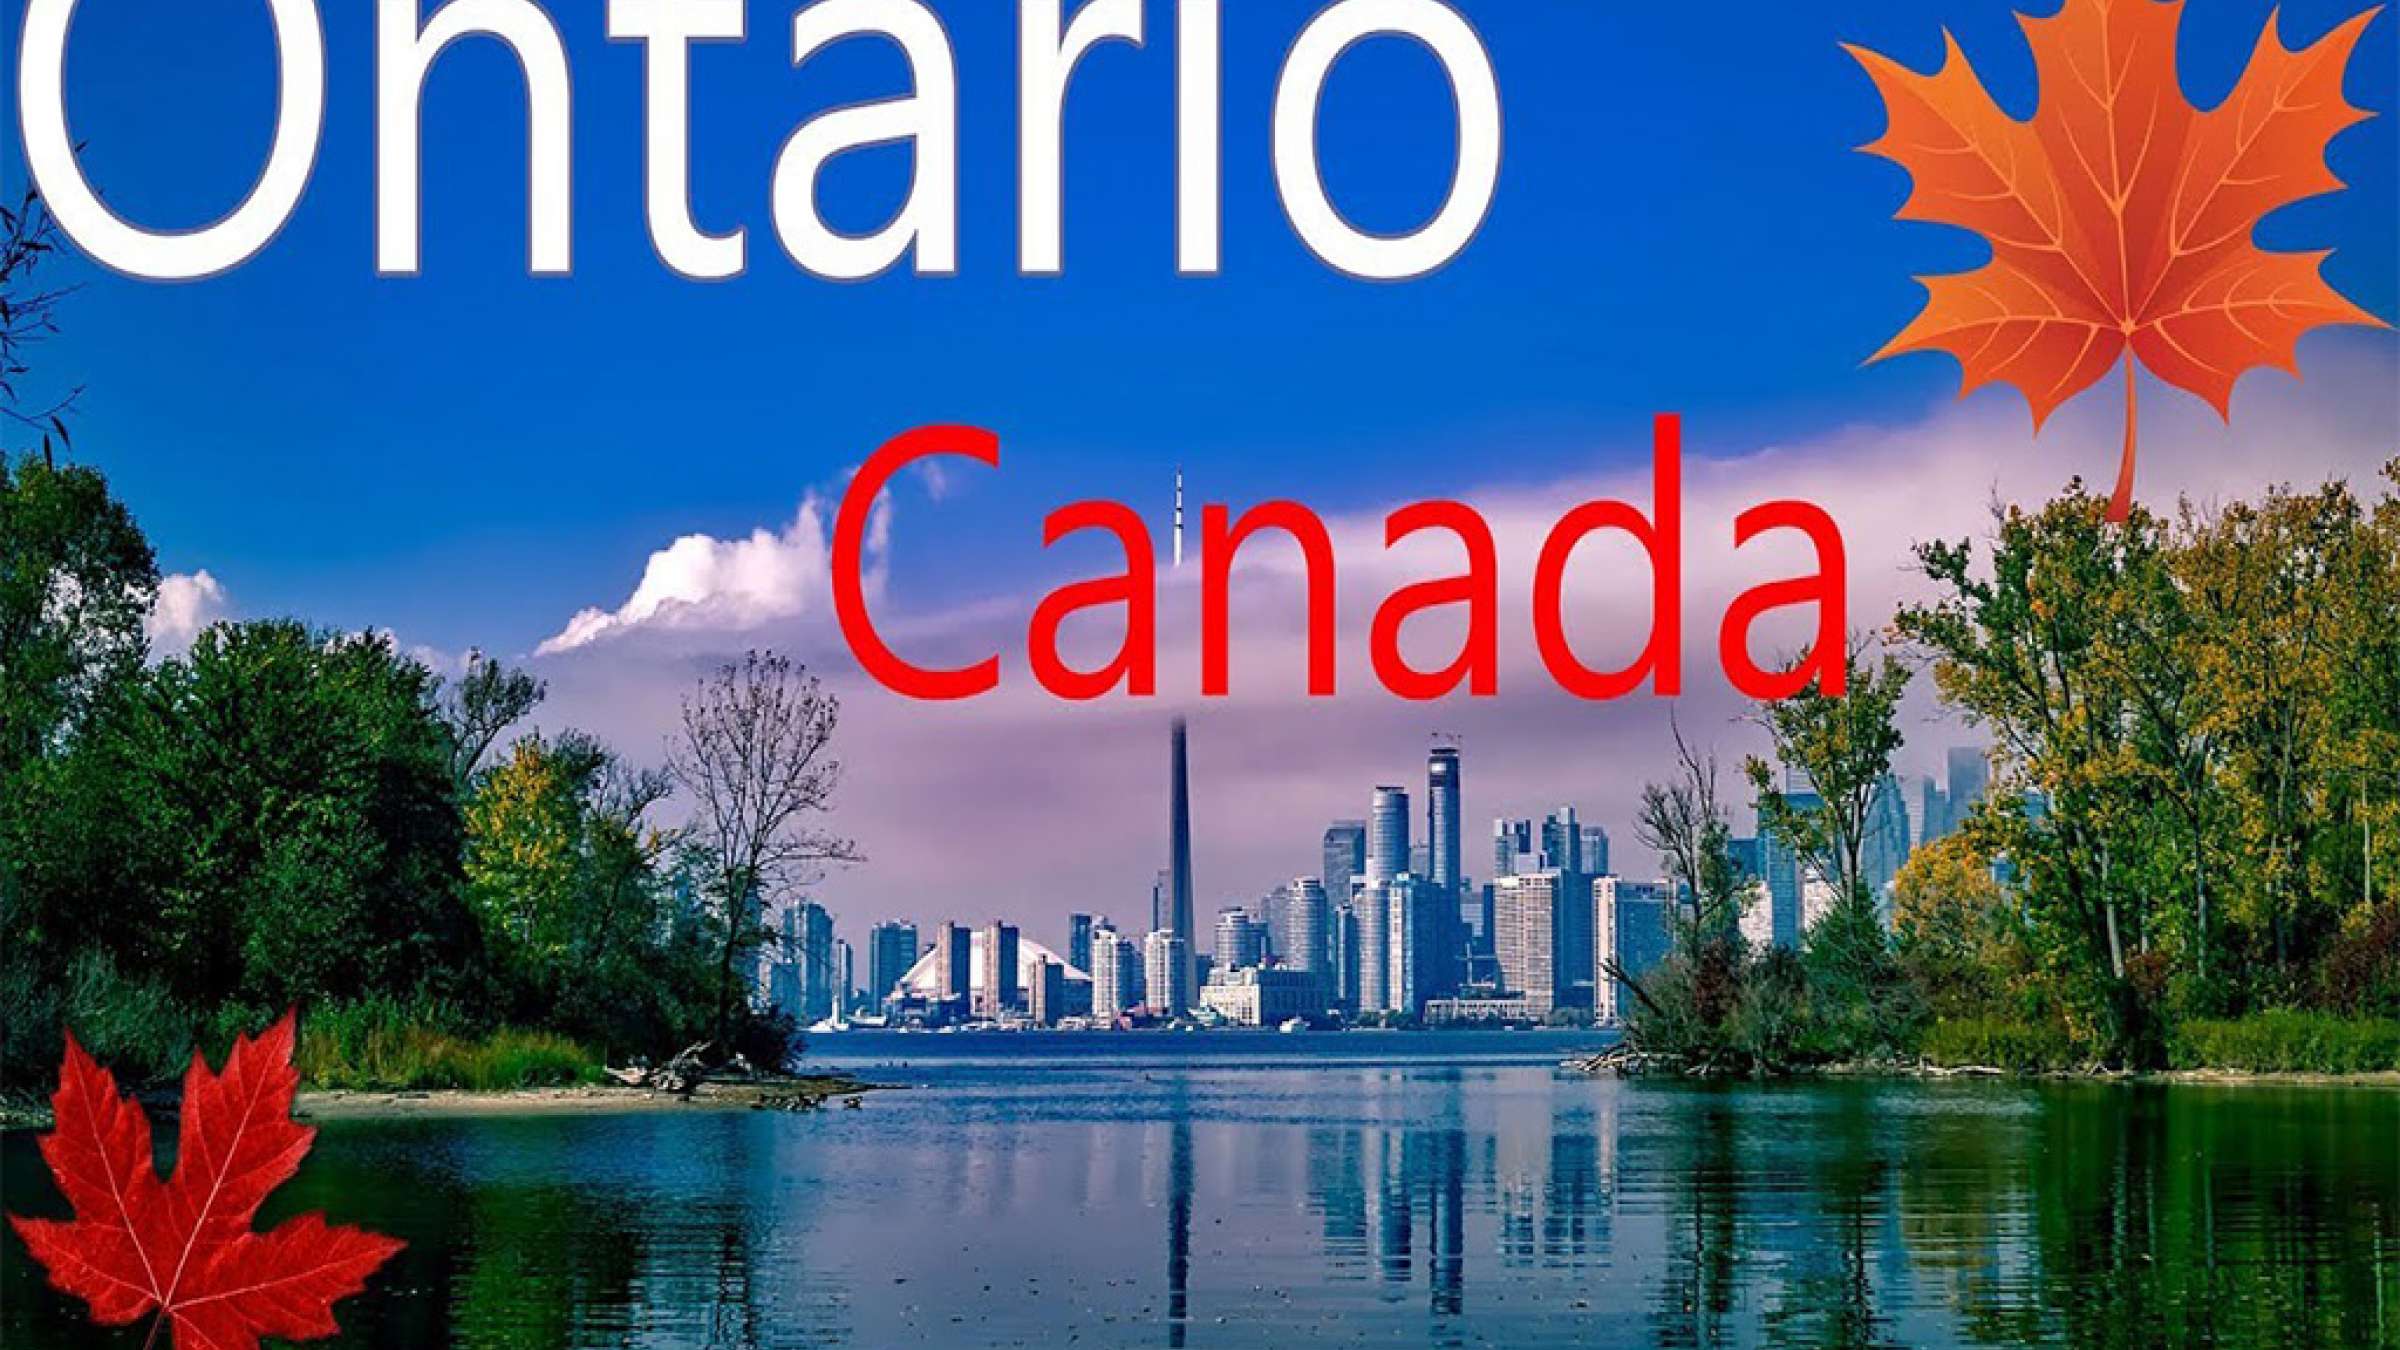 اخبار-کانادا-بهترین-مکان-زندگی-در-کانادا-اعلان-شد-برلینگتون-انتاریو